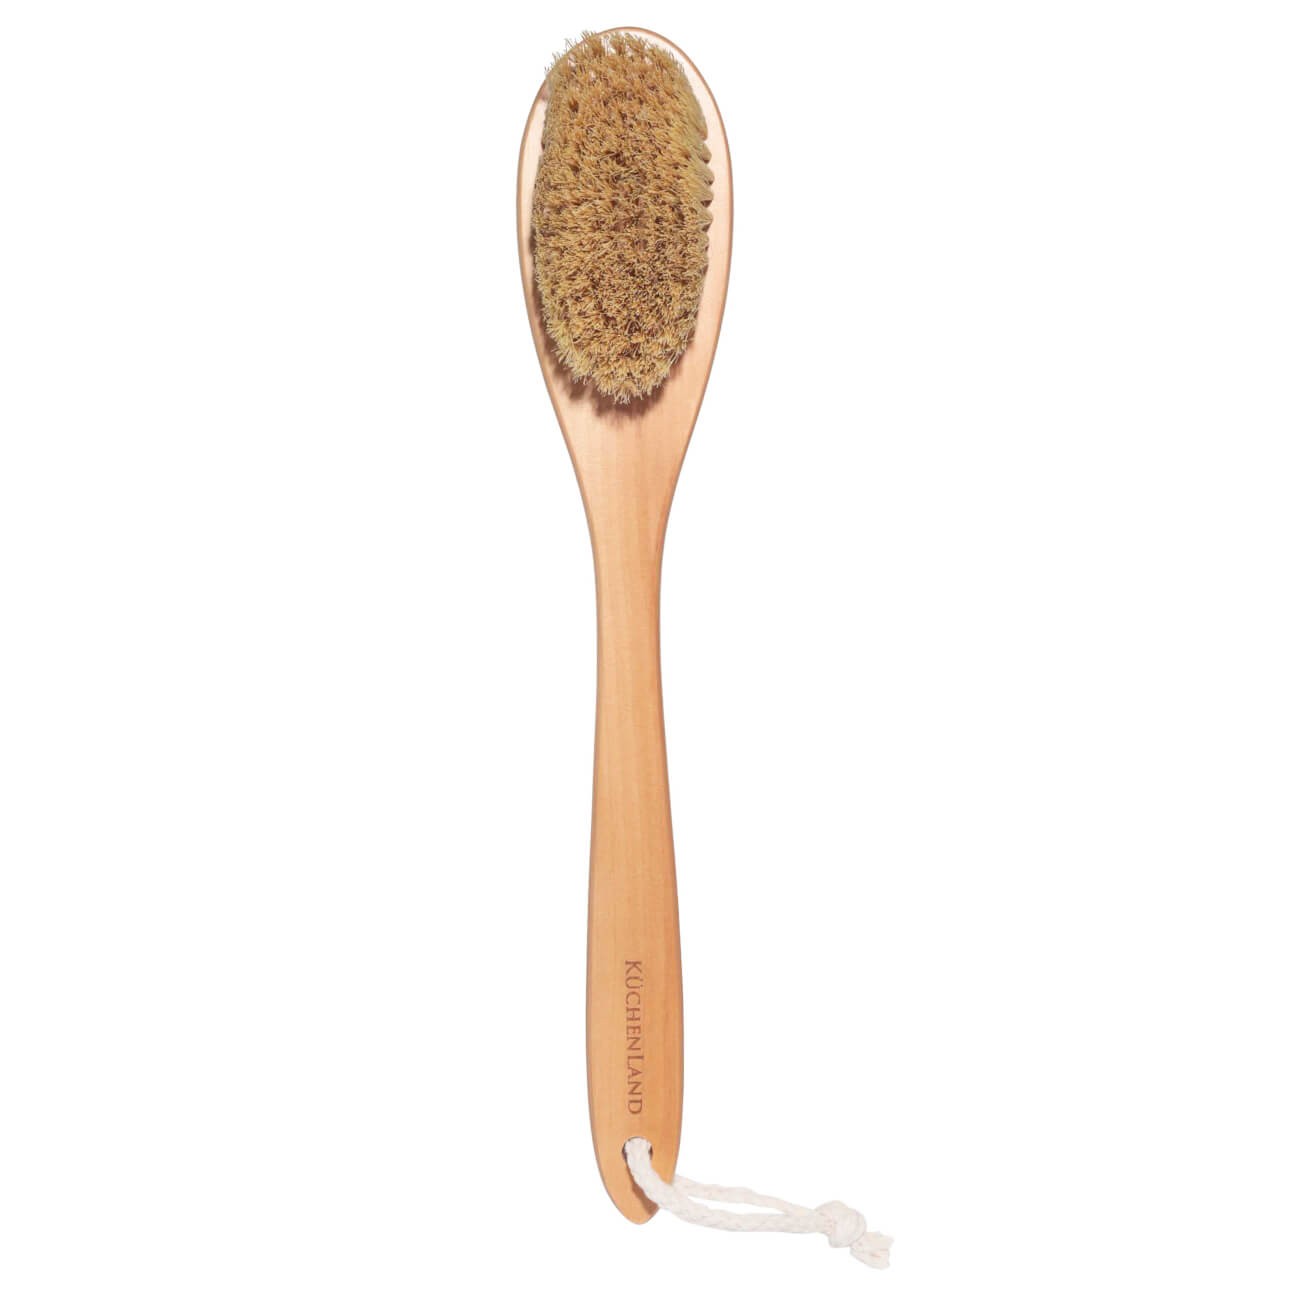 Щетка для сухого массажа, 38 см, дерево/растительное волокно, Bamboo spa щетка сметка с совком с зубьями и кромкой